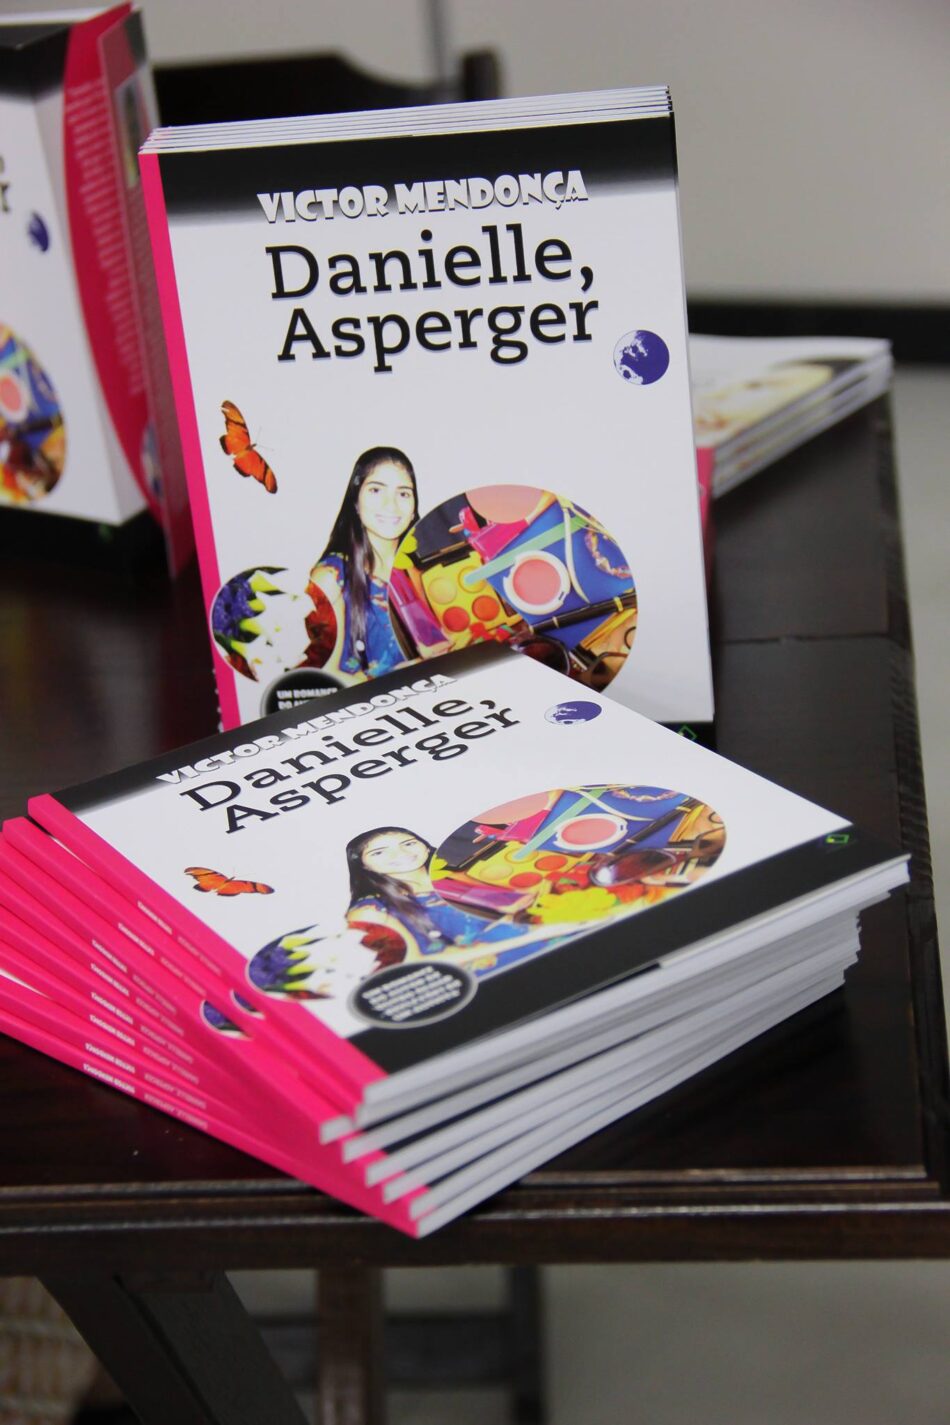 Psiquiatra e pesquisador em autismo analisa o mundo de mulheres em Danielle, romance de 2016 escrito por Sophia Mendonça.